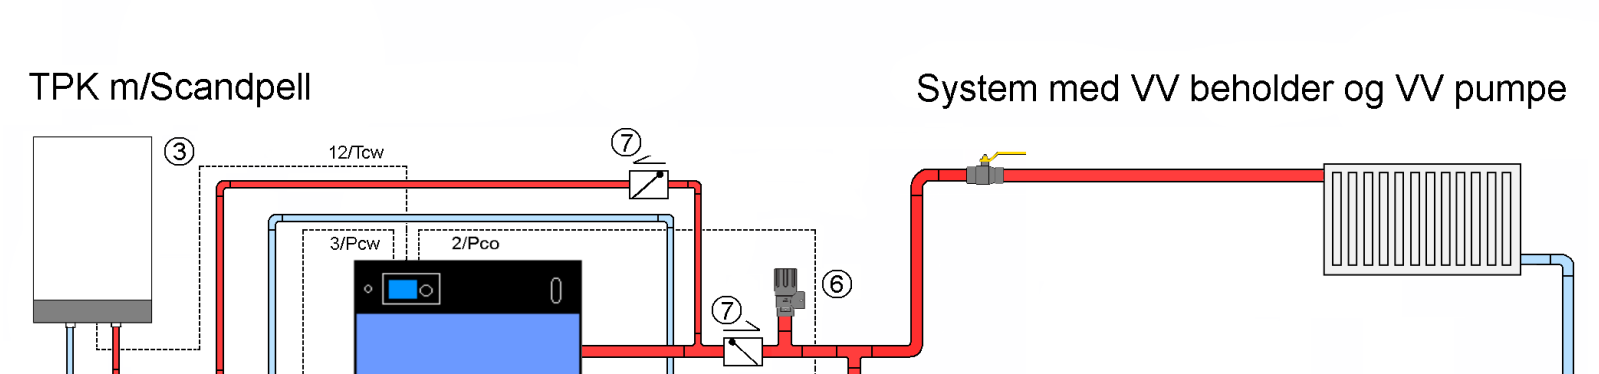 3.3 Installation med varmtvandsbeholder (Scandpell) Der kan laves en installation med enten en lagertank eller en varmtvandsbeholder, hvis styringen alene skal håndtere disse.